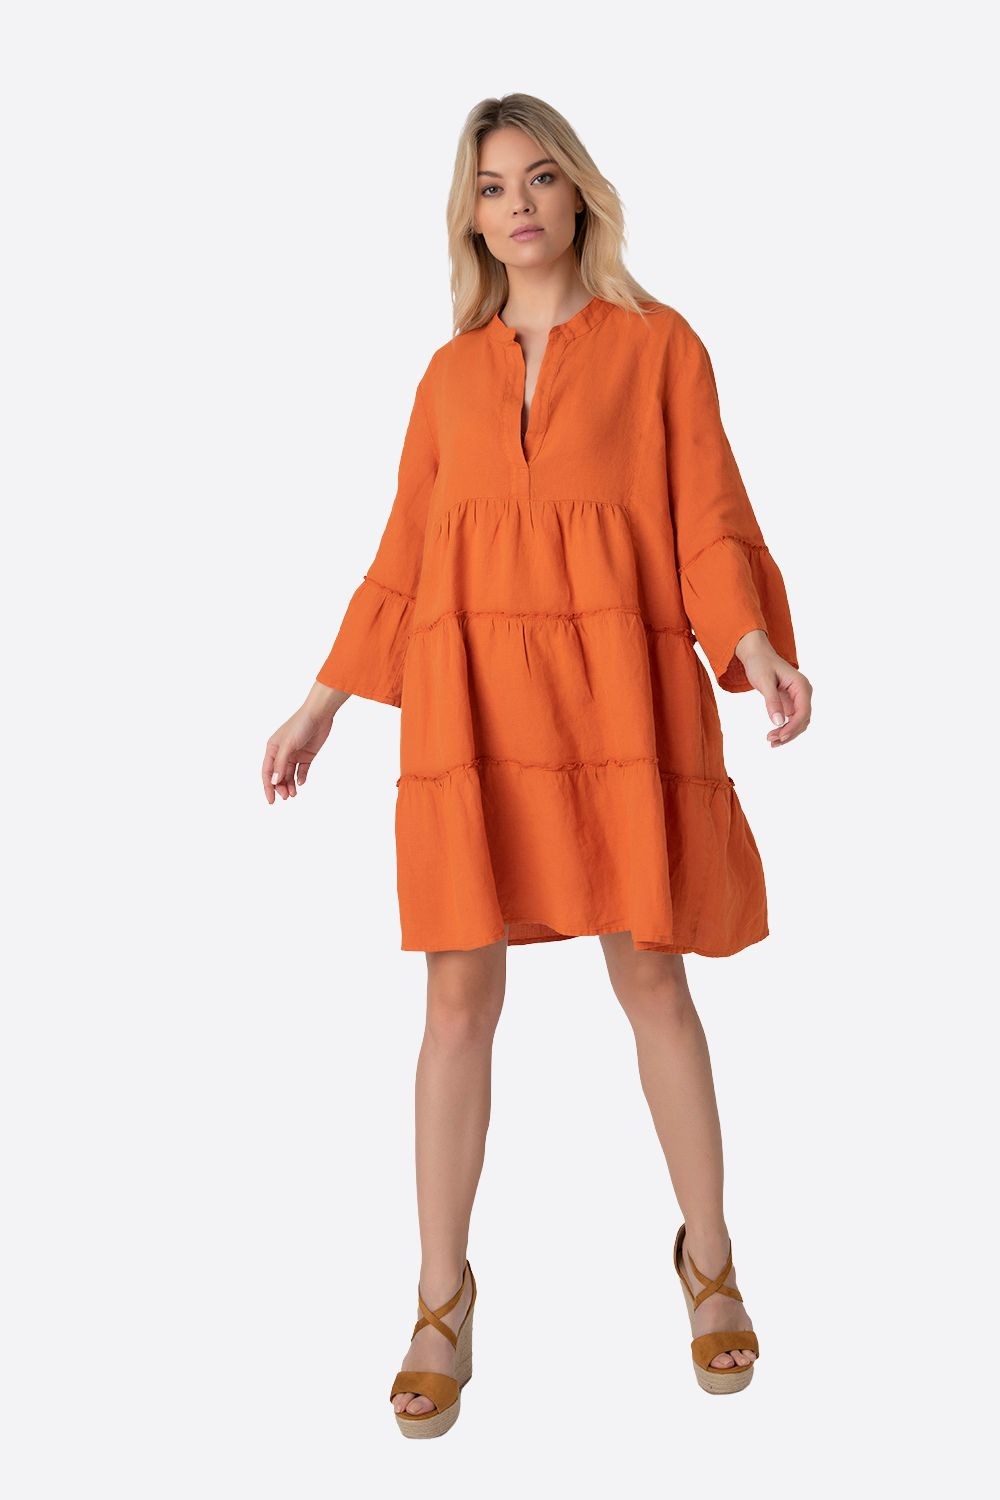 Φόρεμα Boho Πορτοκαλί-My Boutique